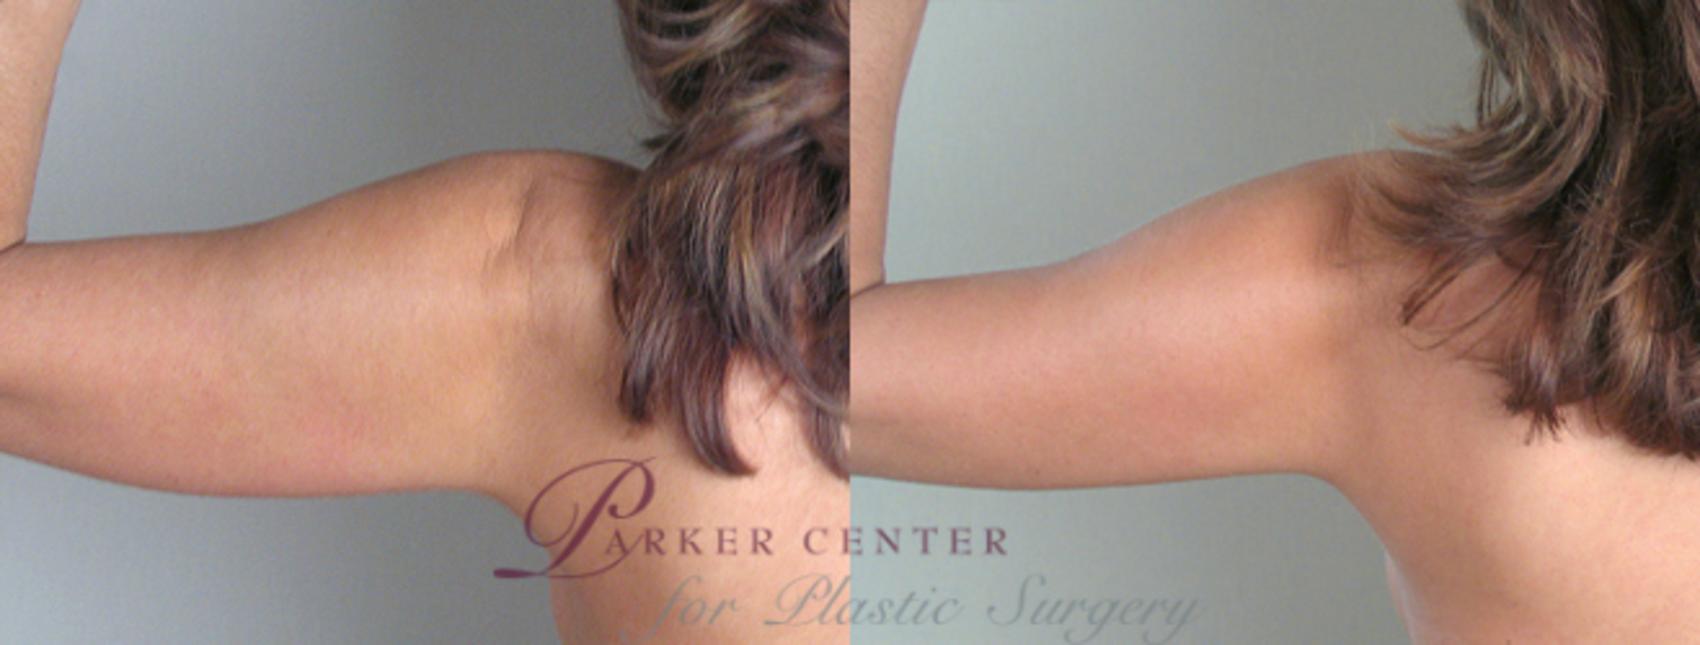 Upper Arm Rejuvenation Case 823 Before & After View #1 | Paramus, NJ | Parker Center for Plastic Surgery